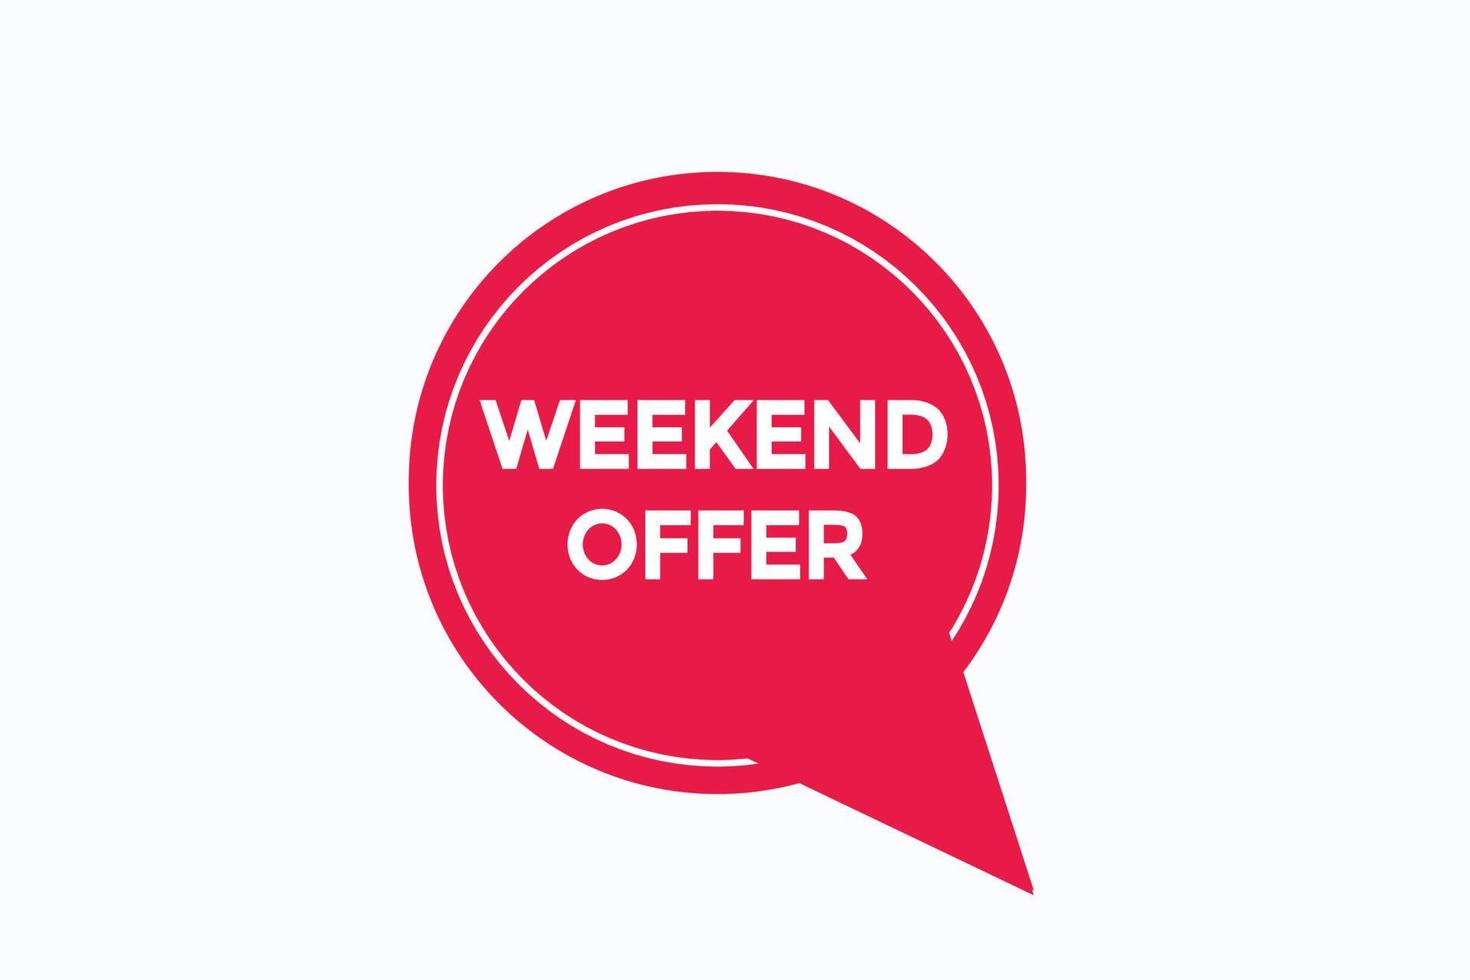 weekend offer button vectors.sign label speech bubble weekend offer vector